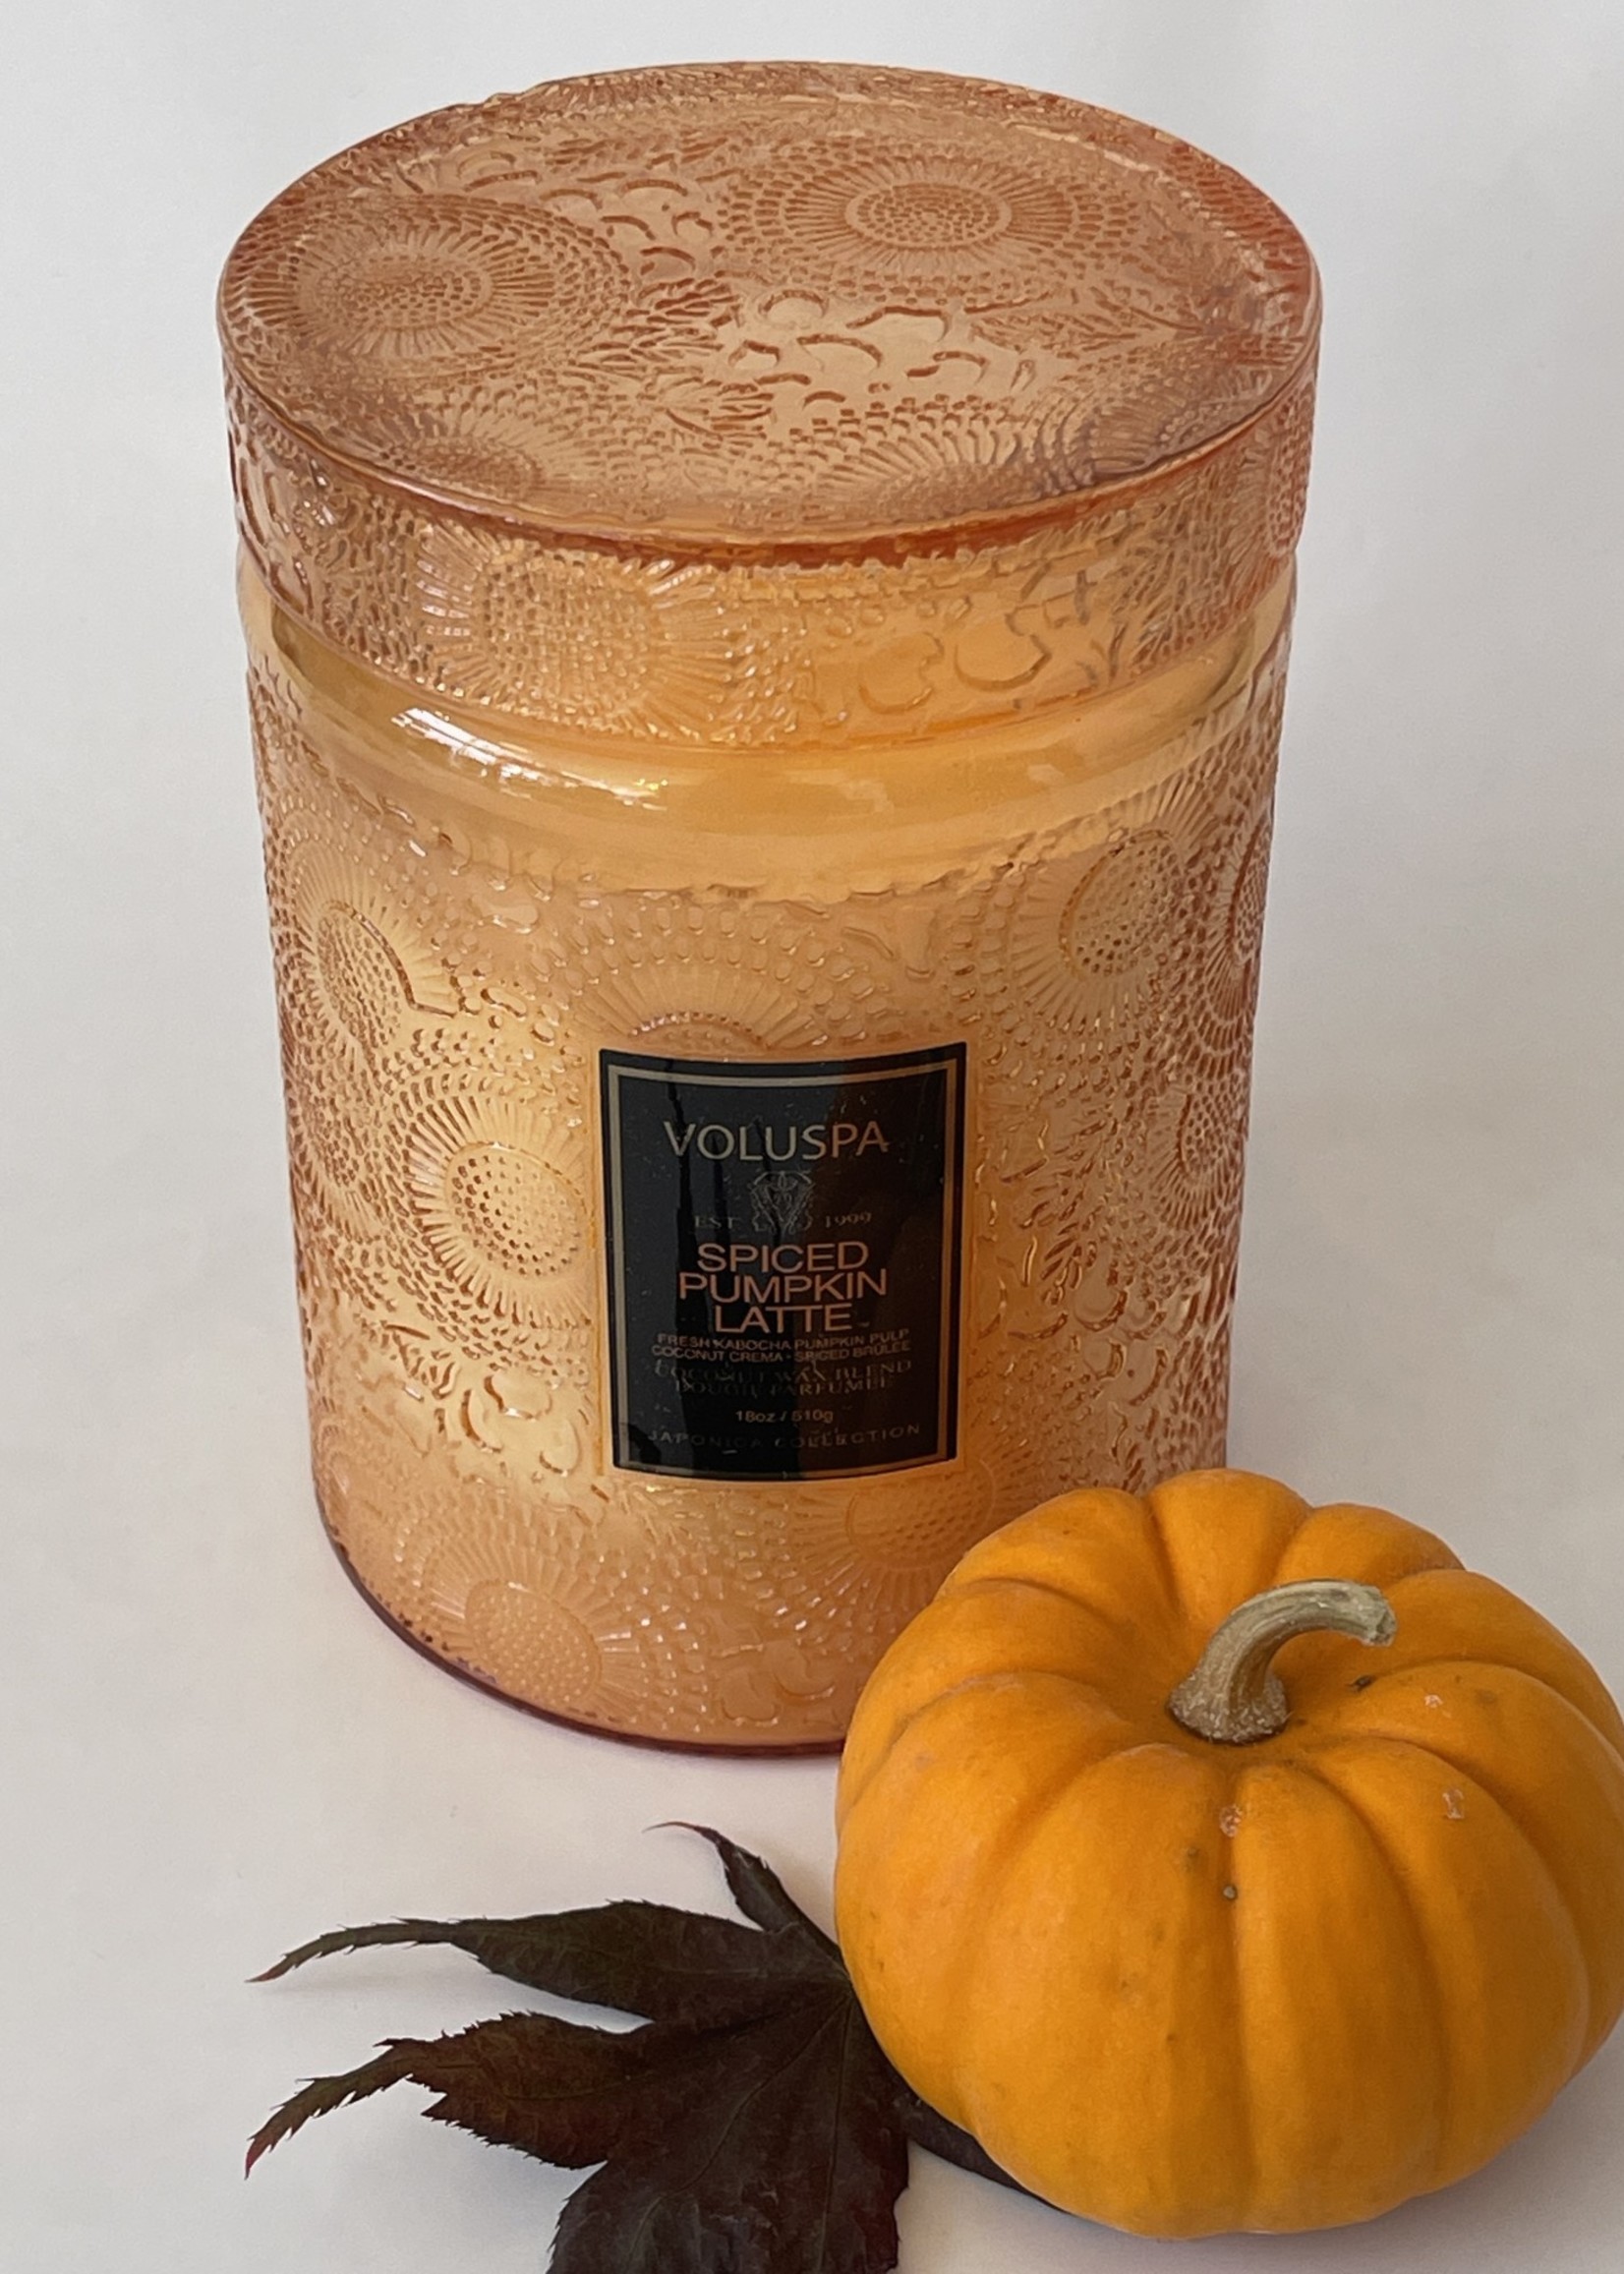 Voluspa Spiced Pumpkin Large Jar